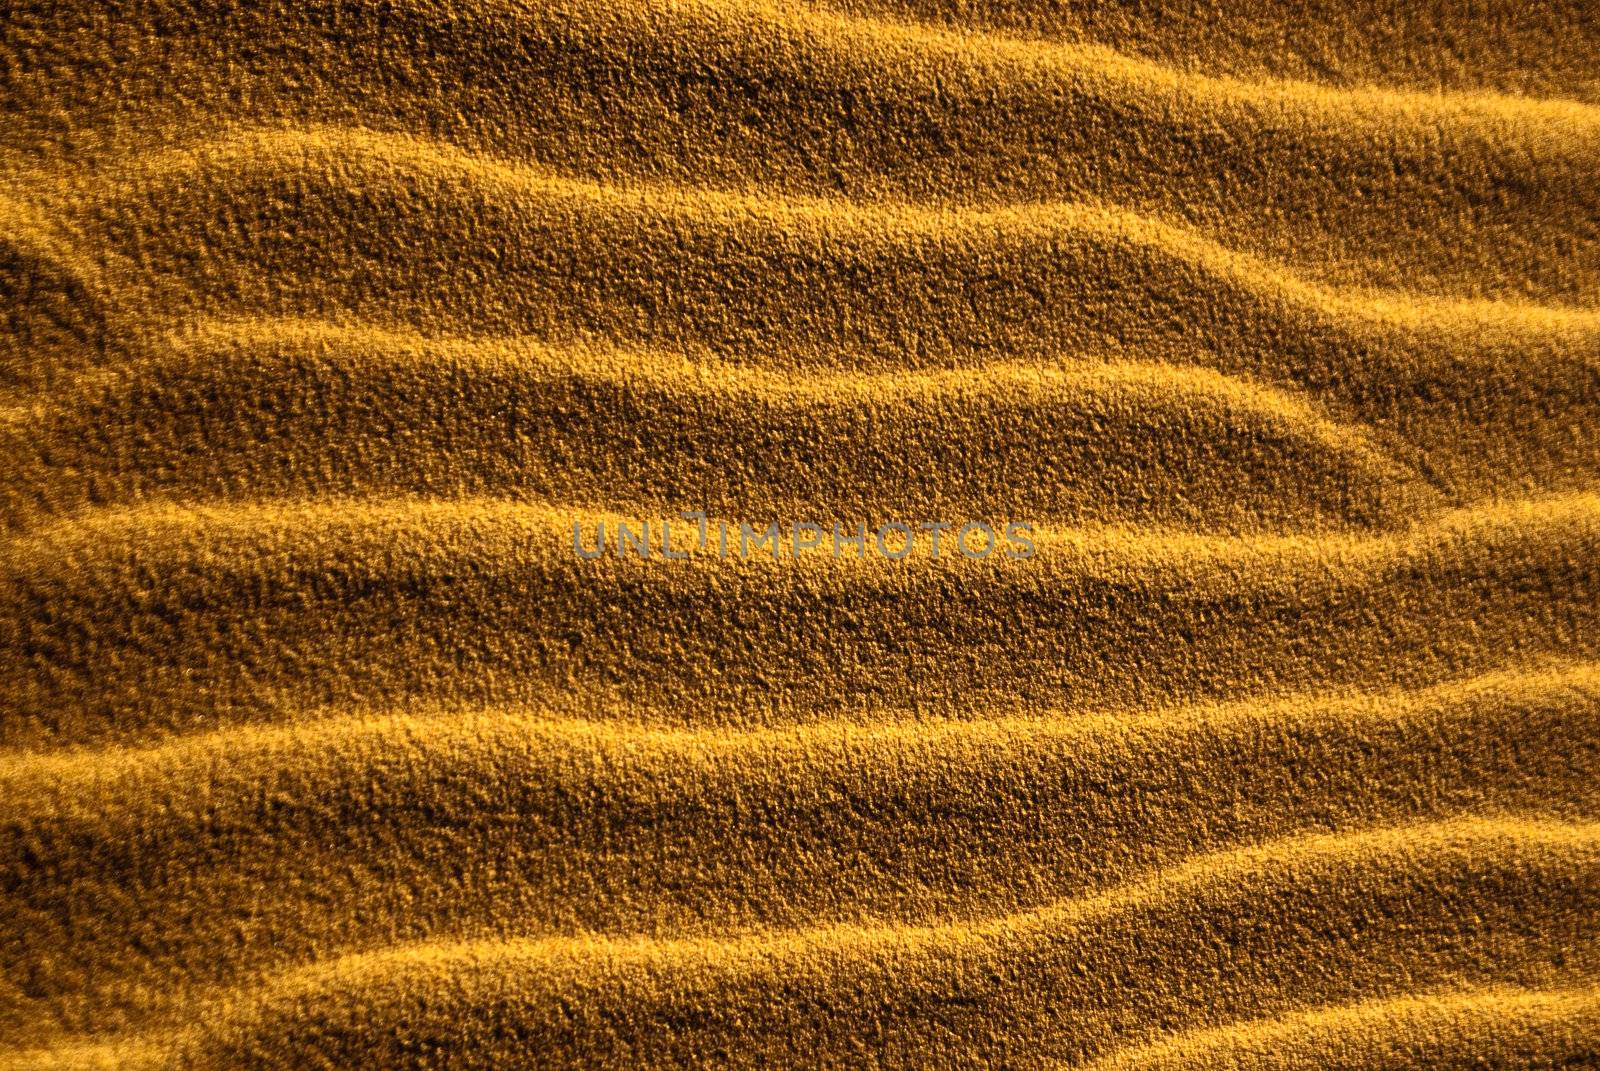 Sand Sidewinders by emattil